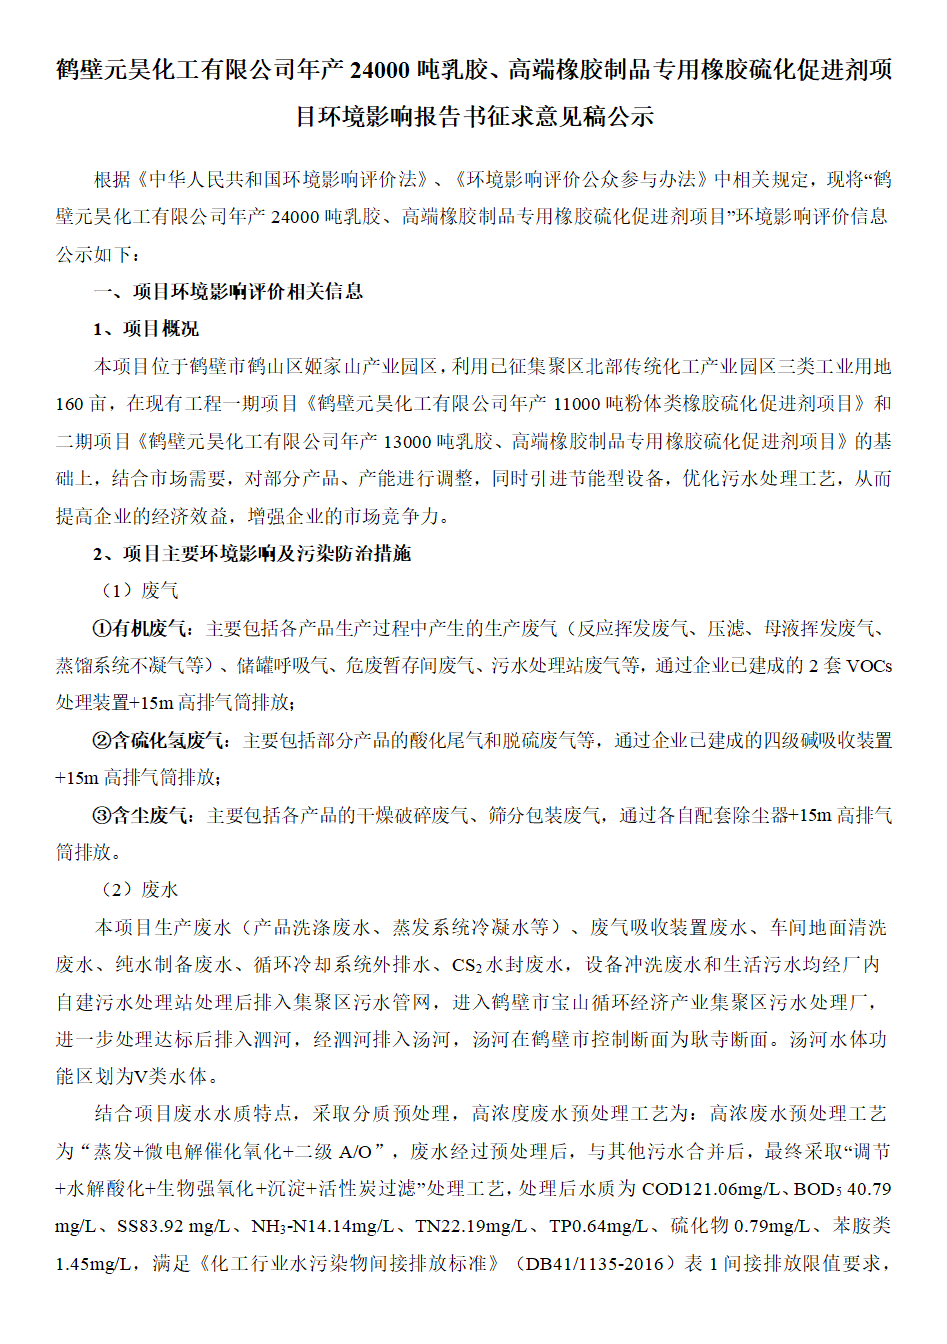 鶴壁元昊化工有限公司環境影響報告書征求意見稿公示